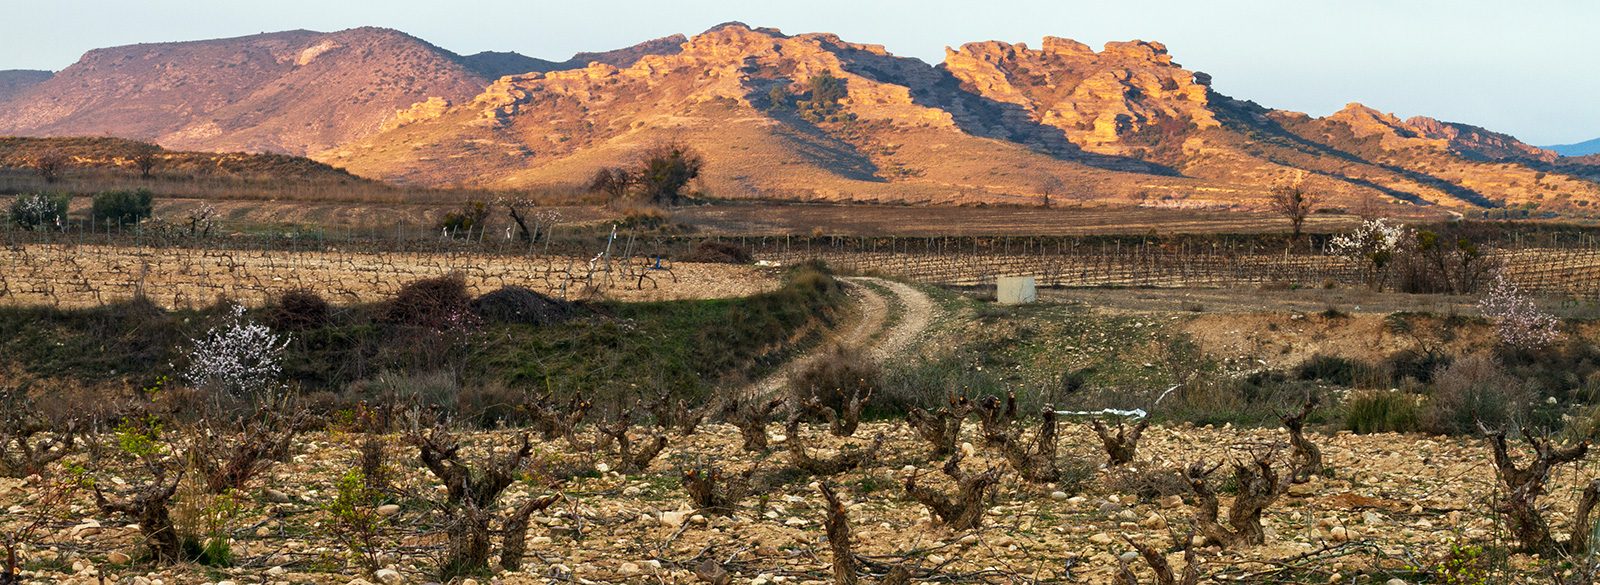 Los vinos de Aragón, Gredos y Navarra que debes tener en tu radar